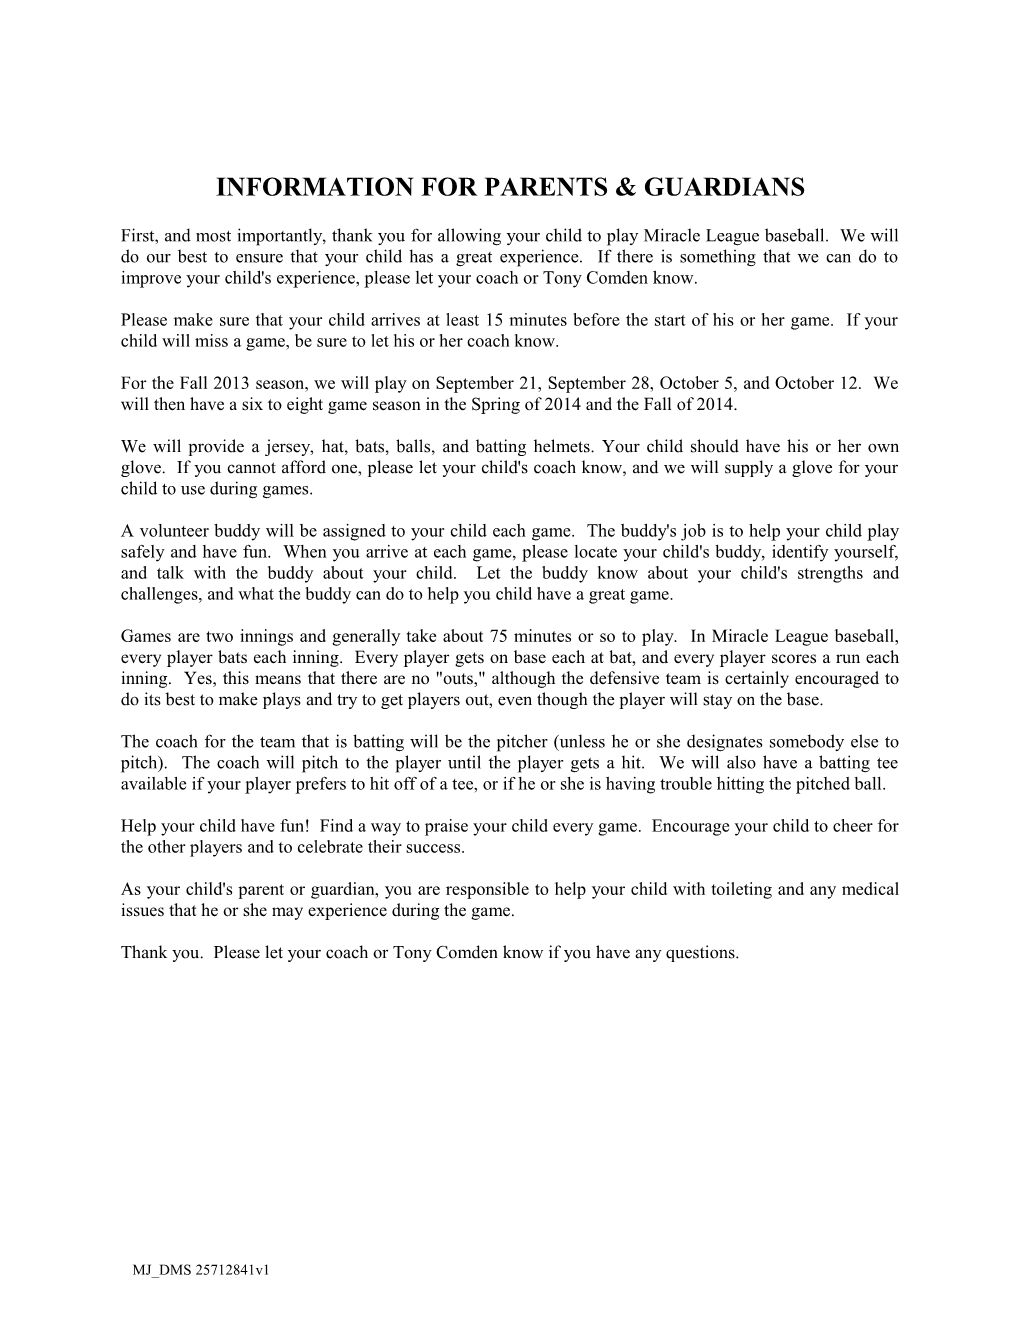 Information for Parents & Guardians